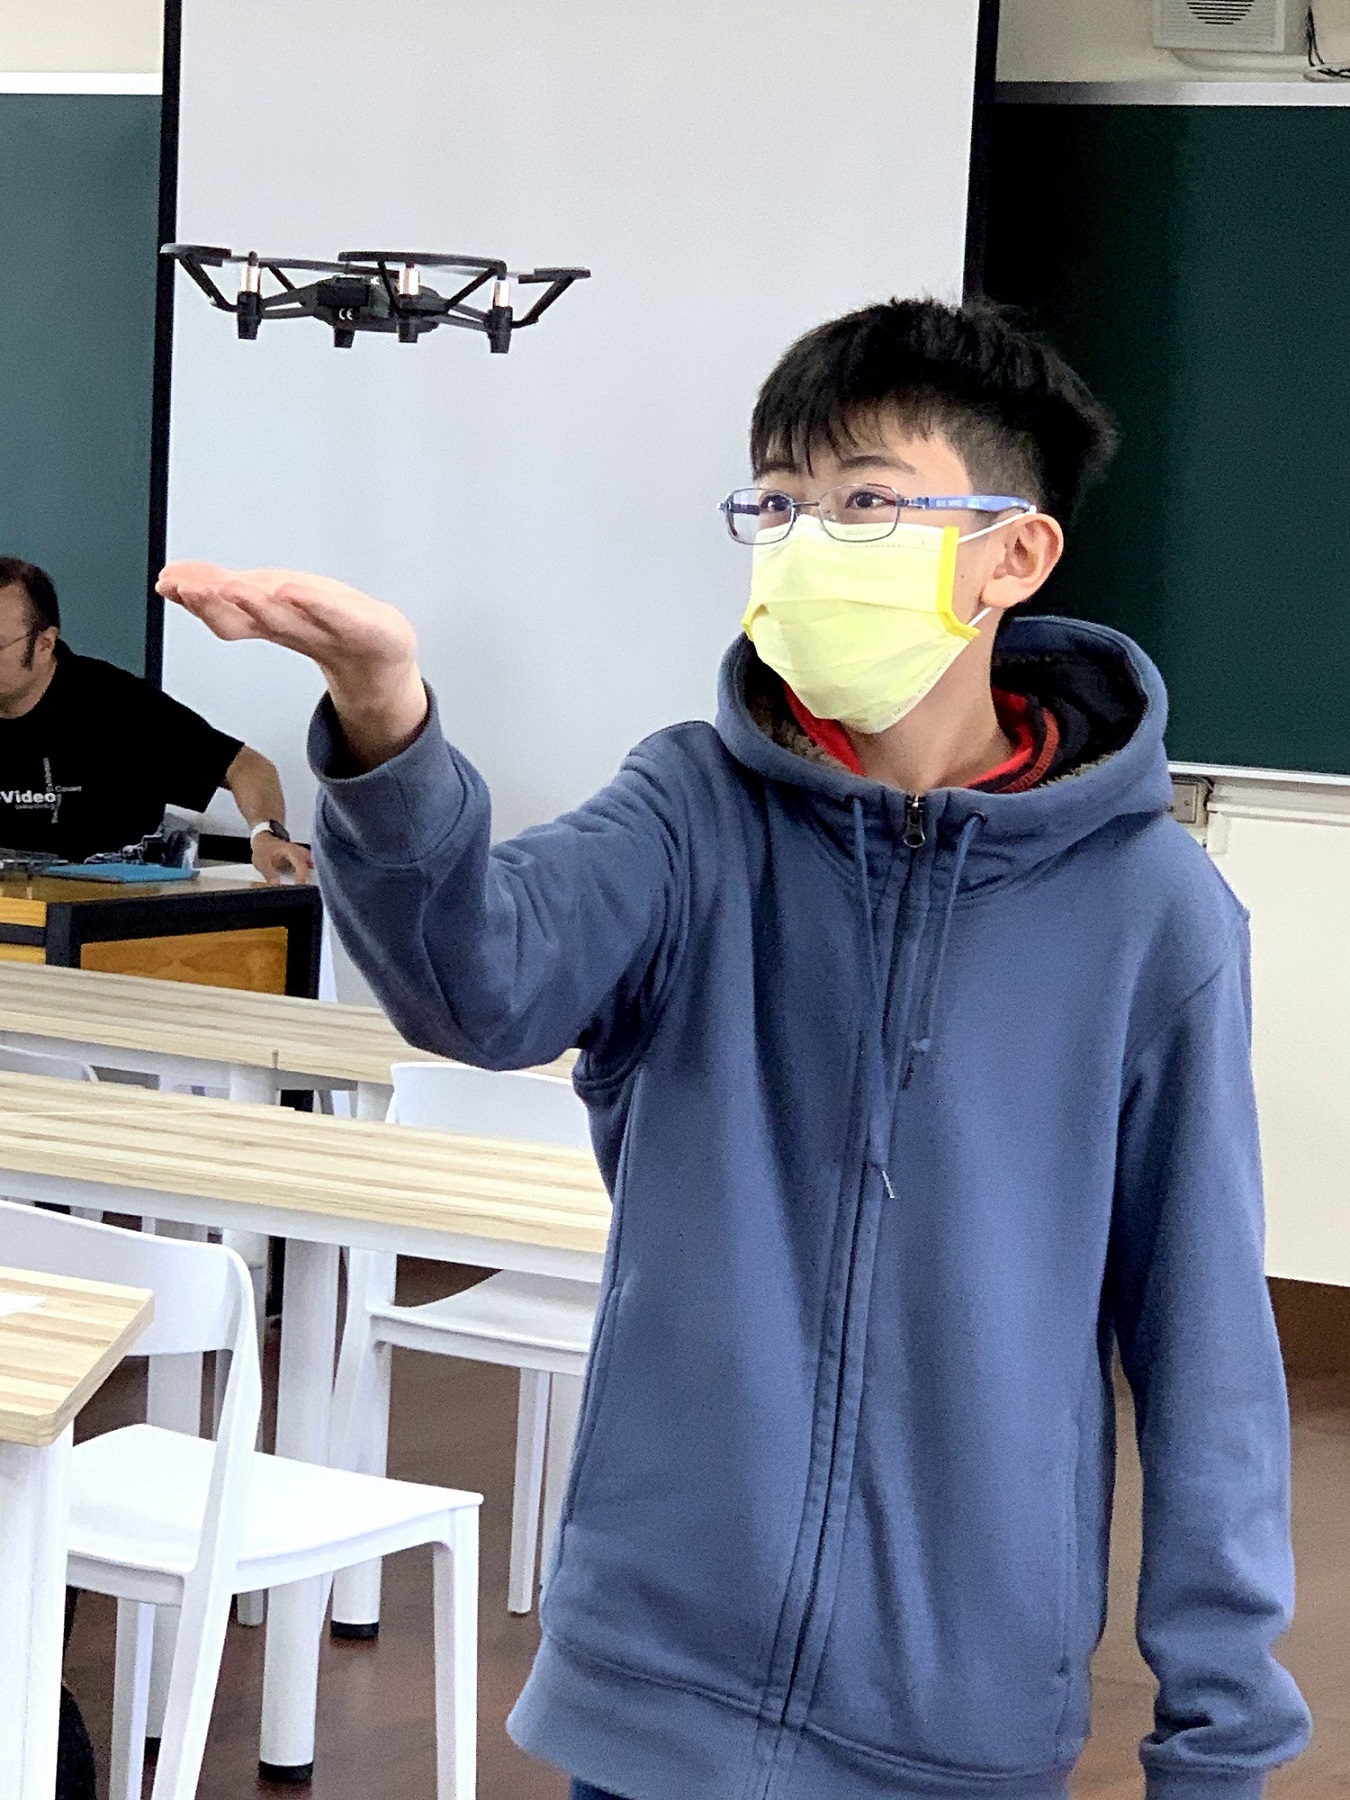 中山大學附中-學員實際操作無人機飛行1_大圖